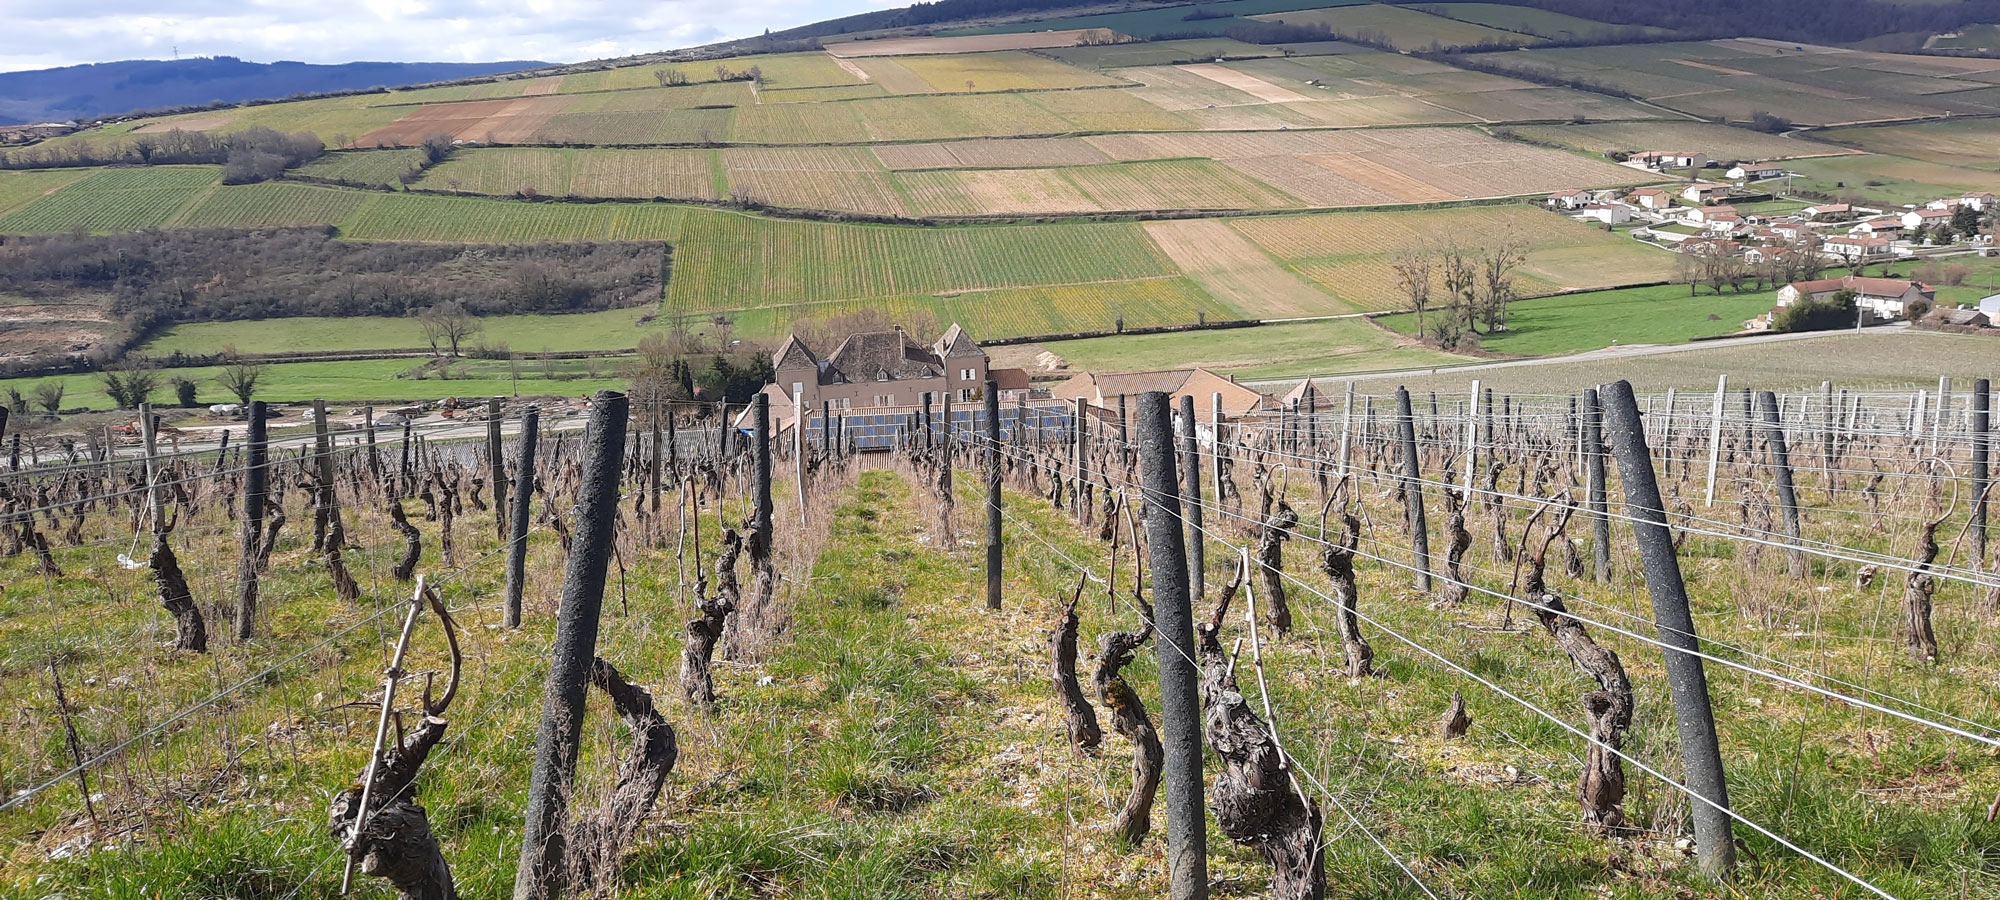 Les vignes évoluent sur une myriade de terroirs qui donnent des expressions différentes aux vins - Crédit : Romy Ducoulombier